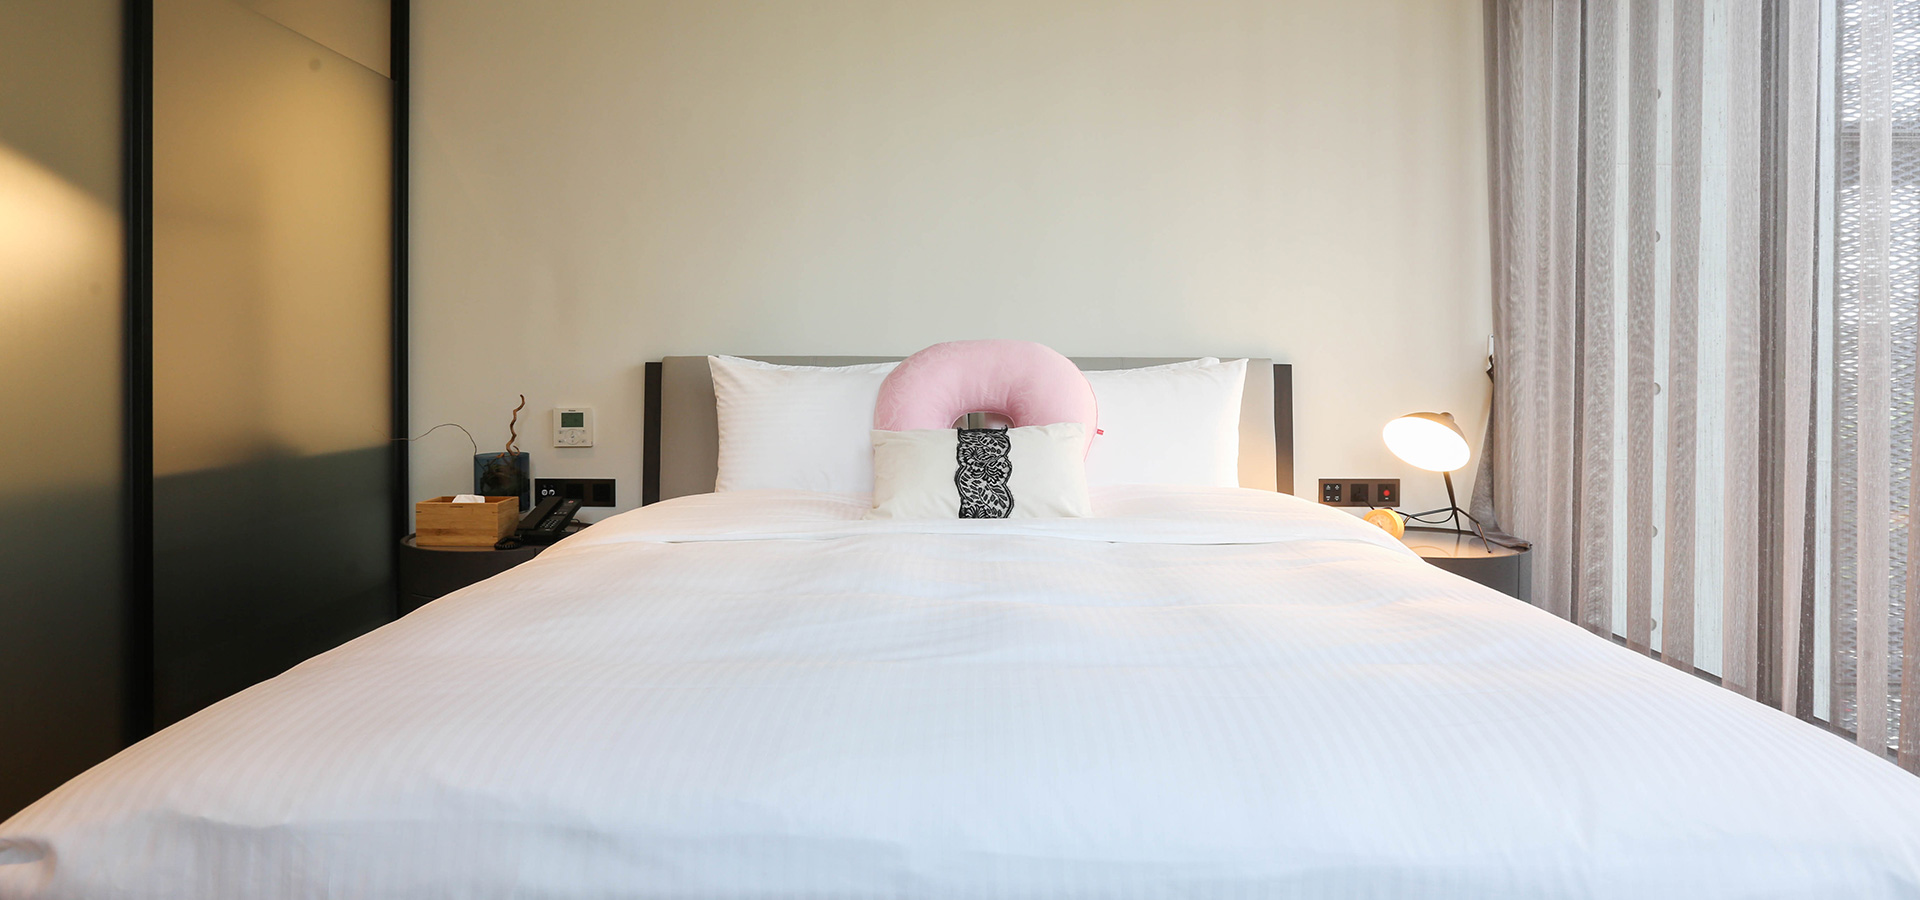 插圖 - 純白主題雙人床，粉紅靠枕